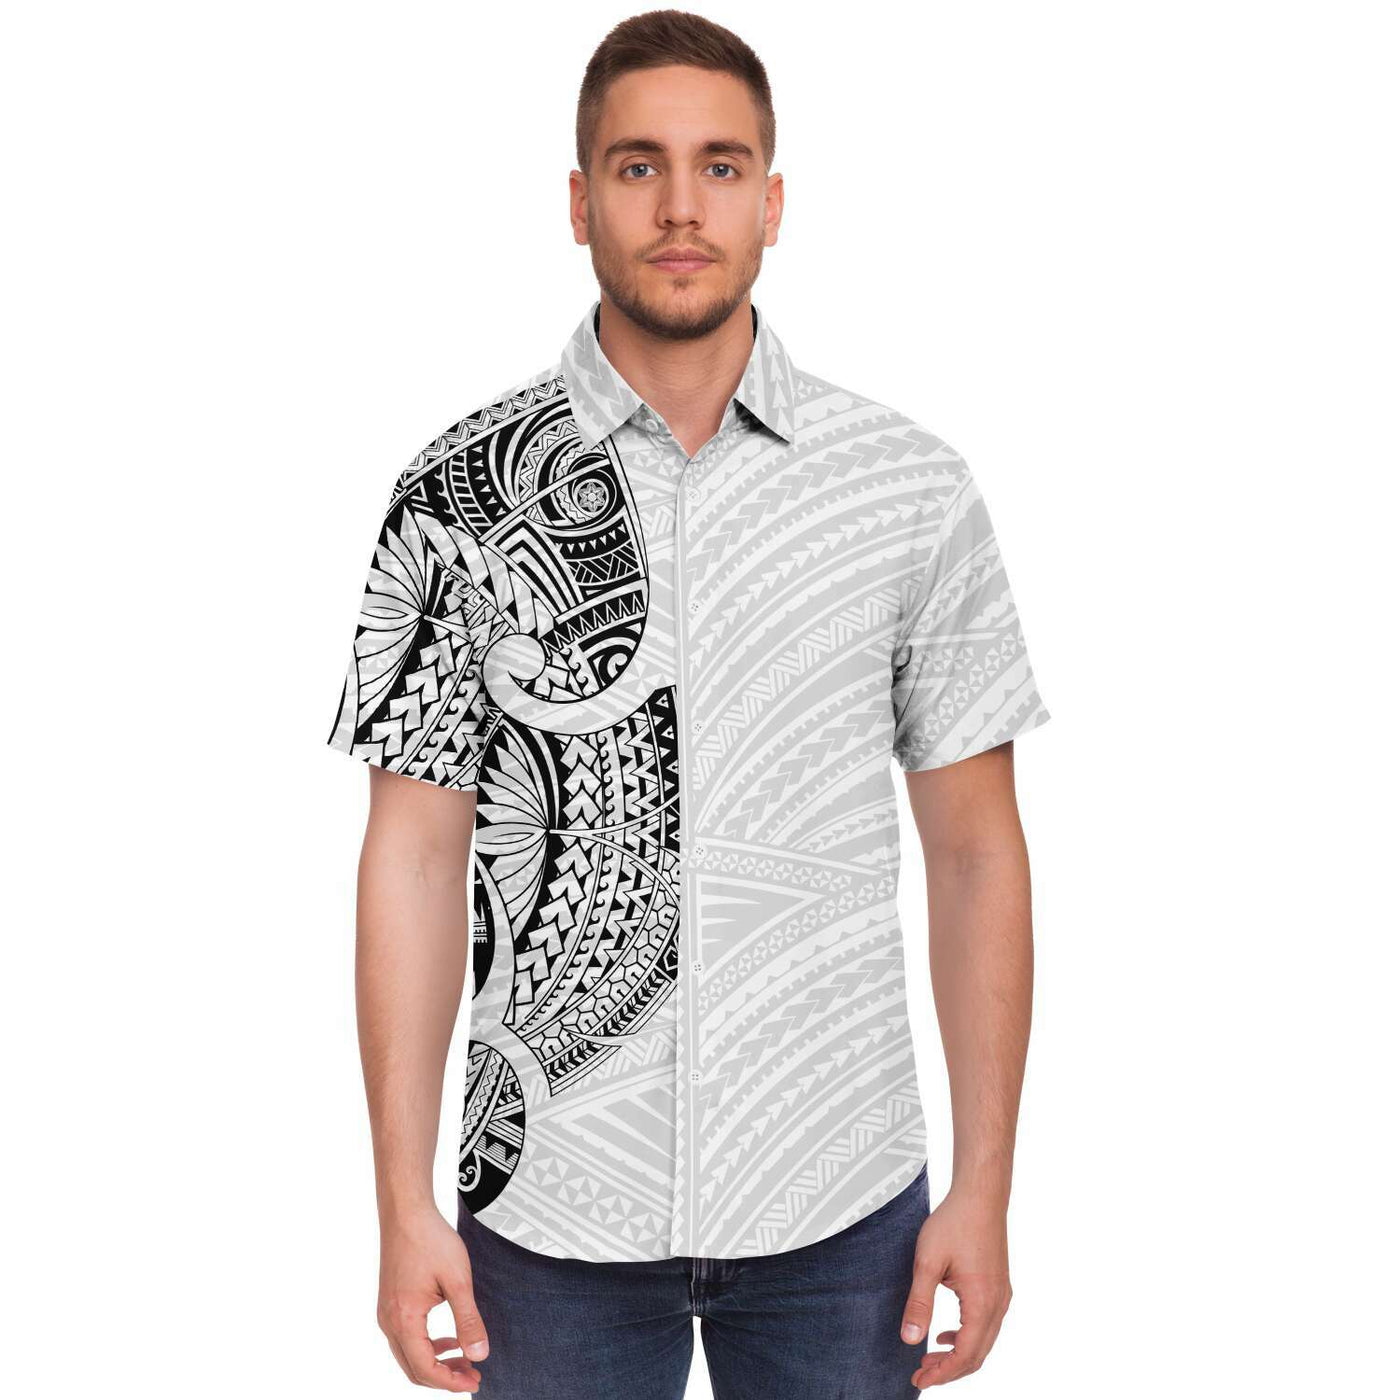 Tahiti Tattoo Designs T-shirts – Atikapu